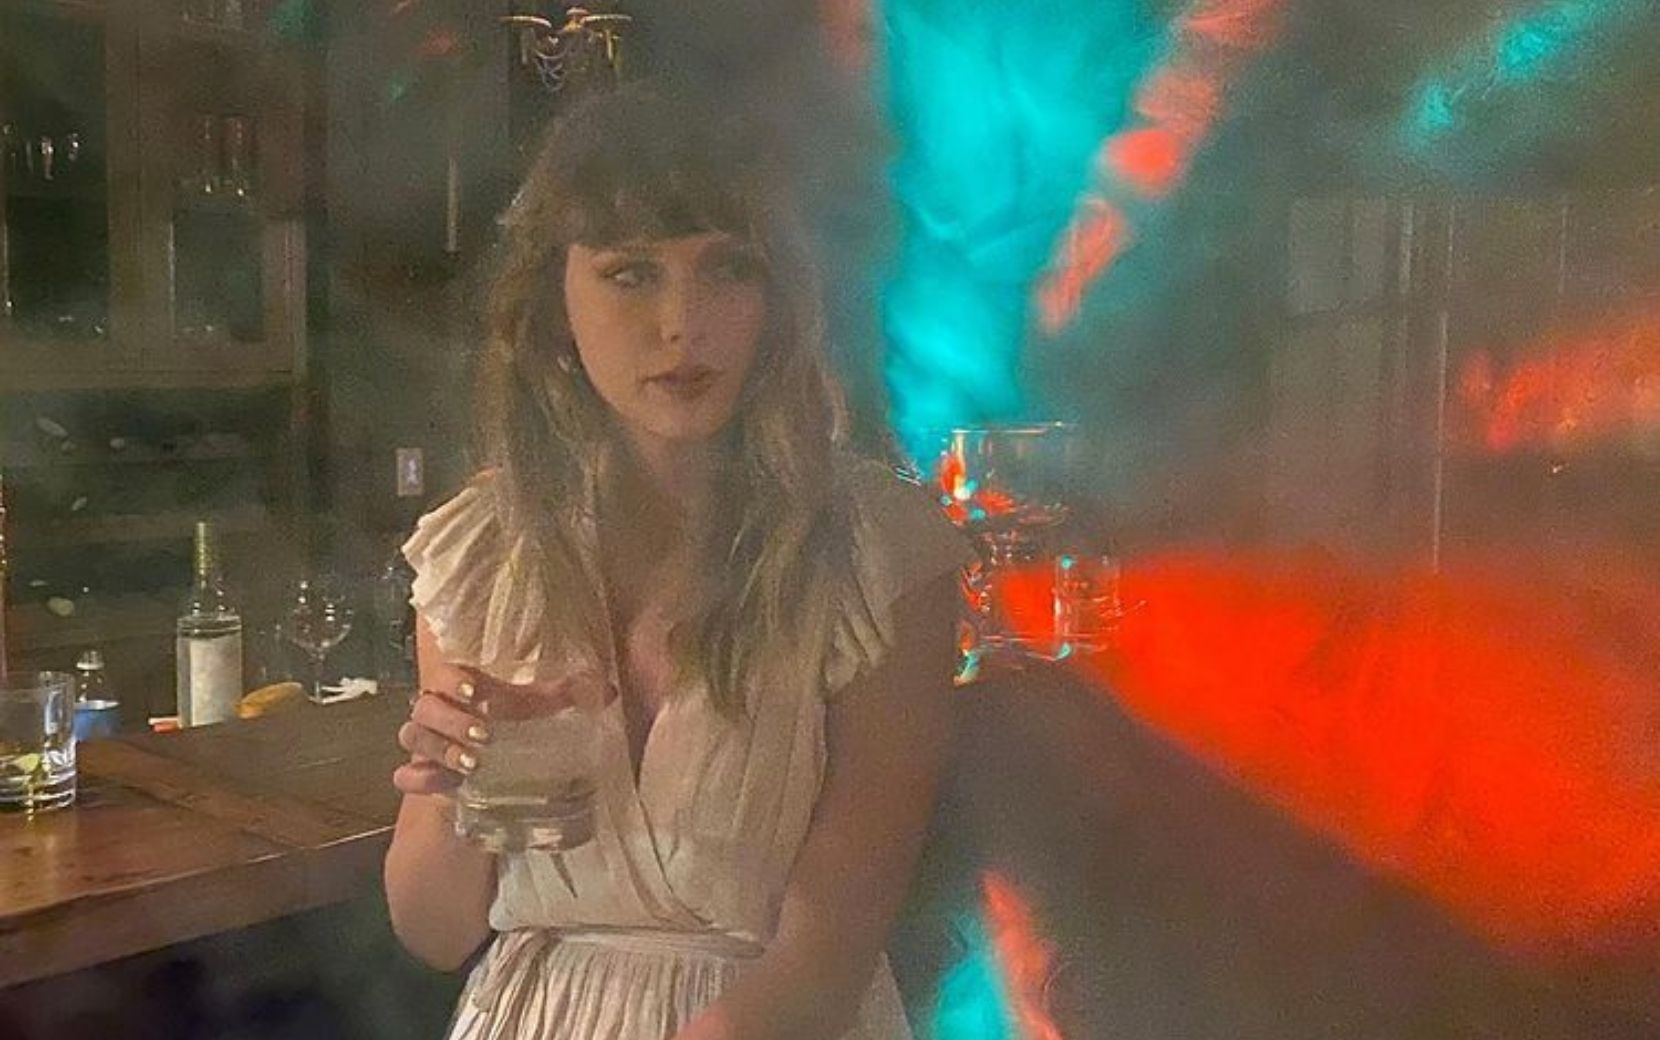 Taylor Swift libera prévia inédita de "You All Over Me" em programa de TV - confira!